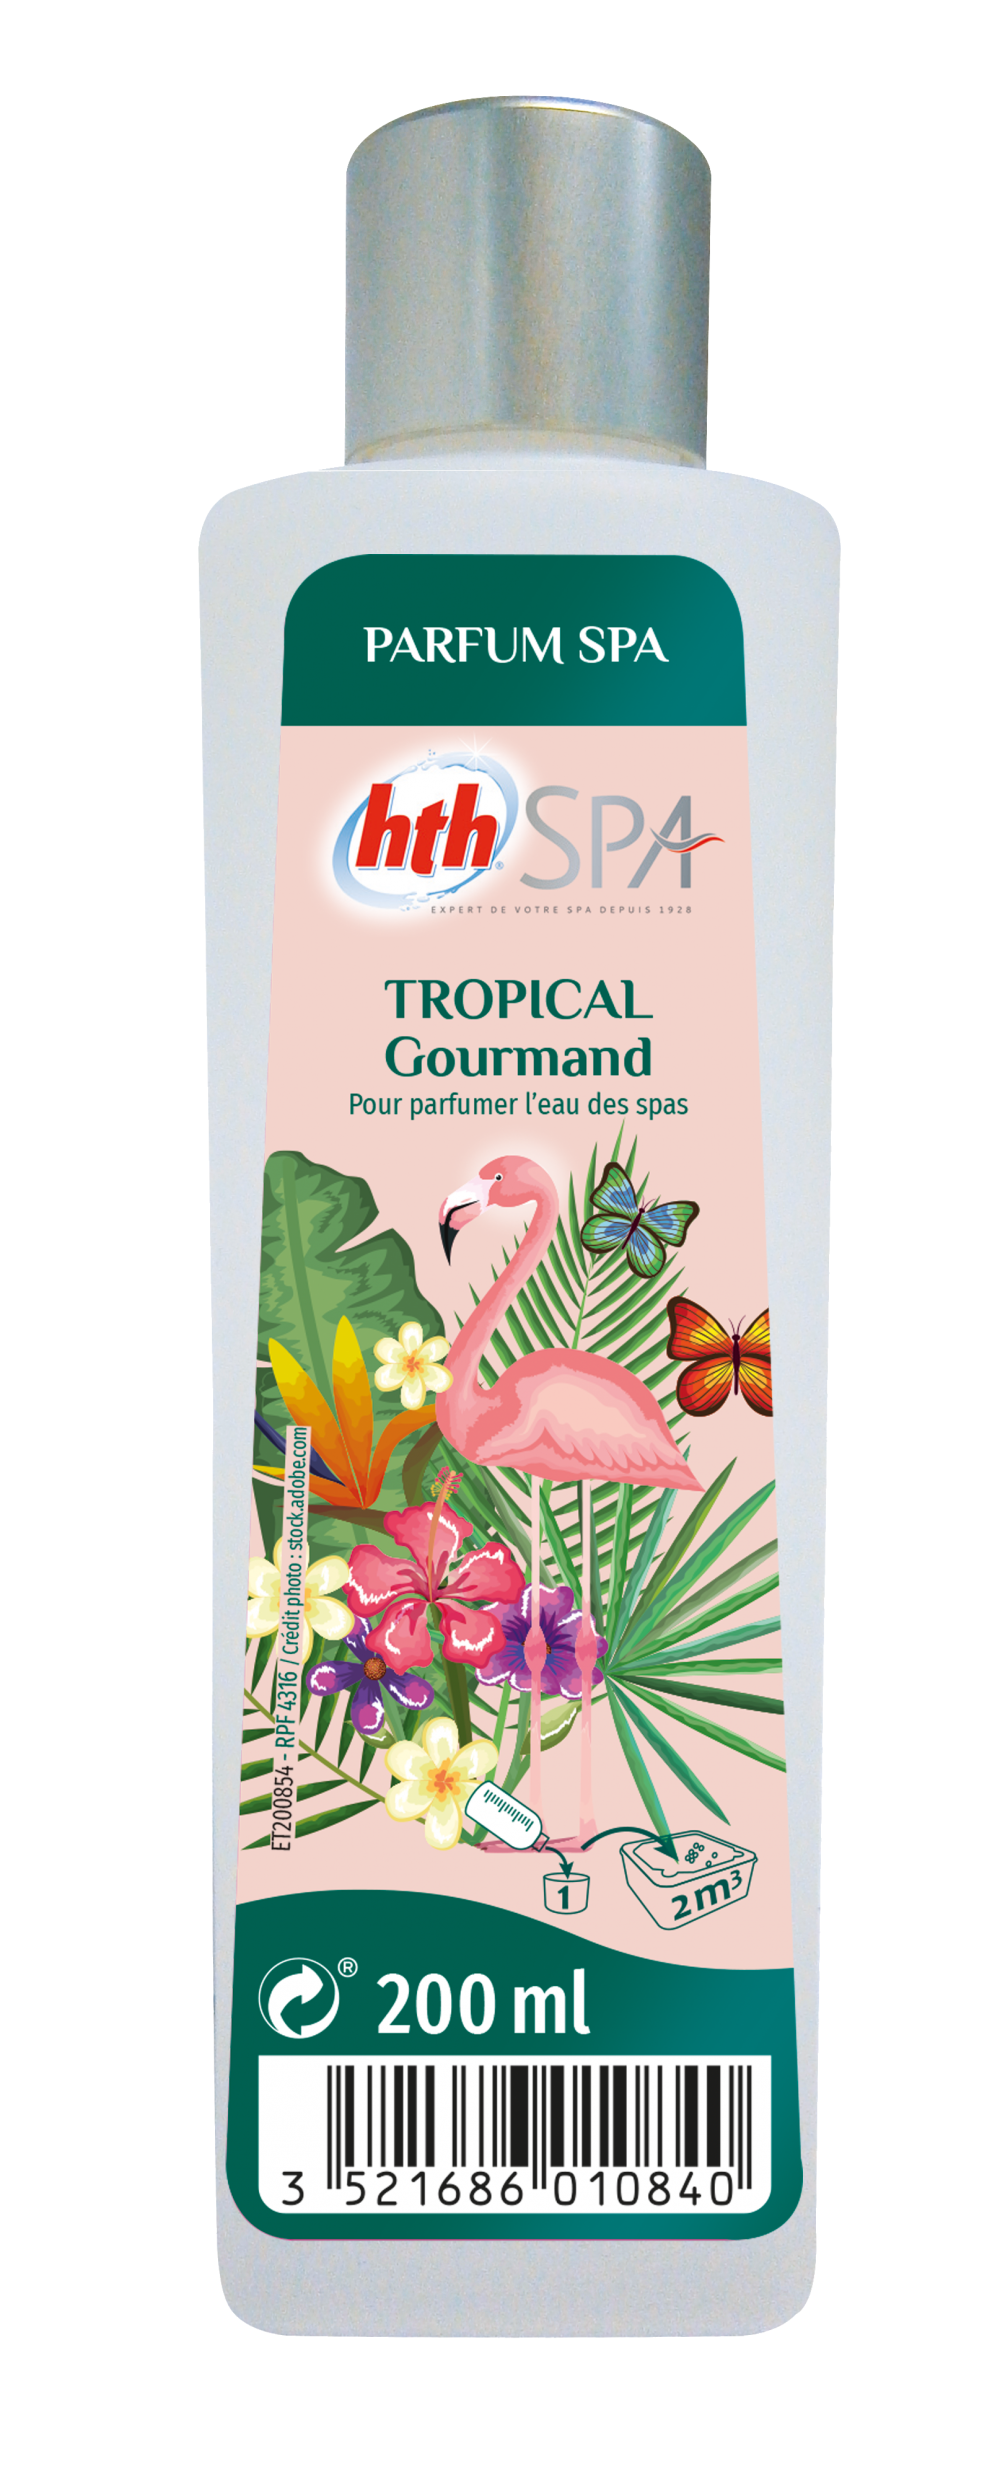 HTH Spa - Parfum fleurs de monoï 200 ml